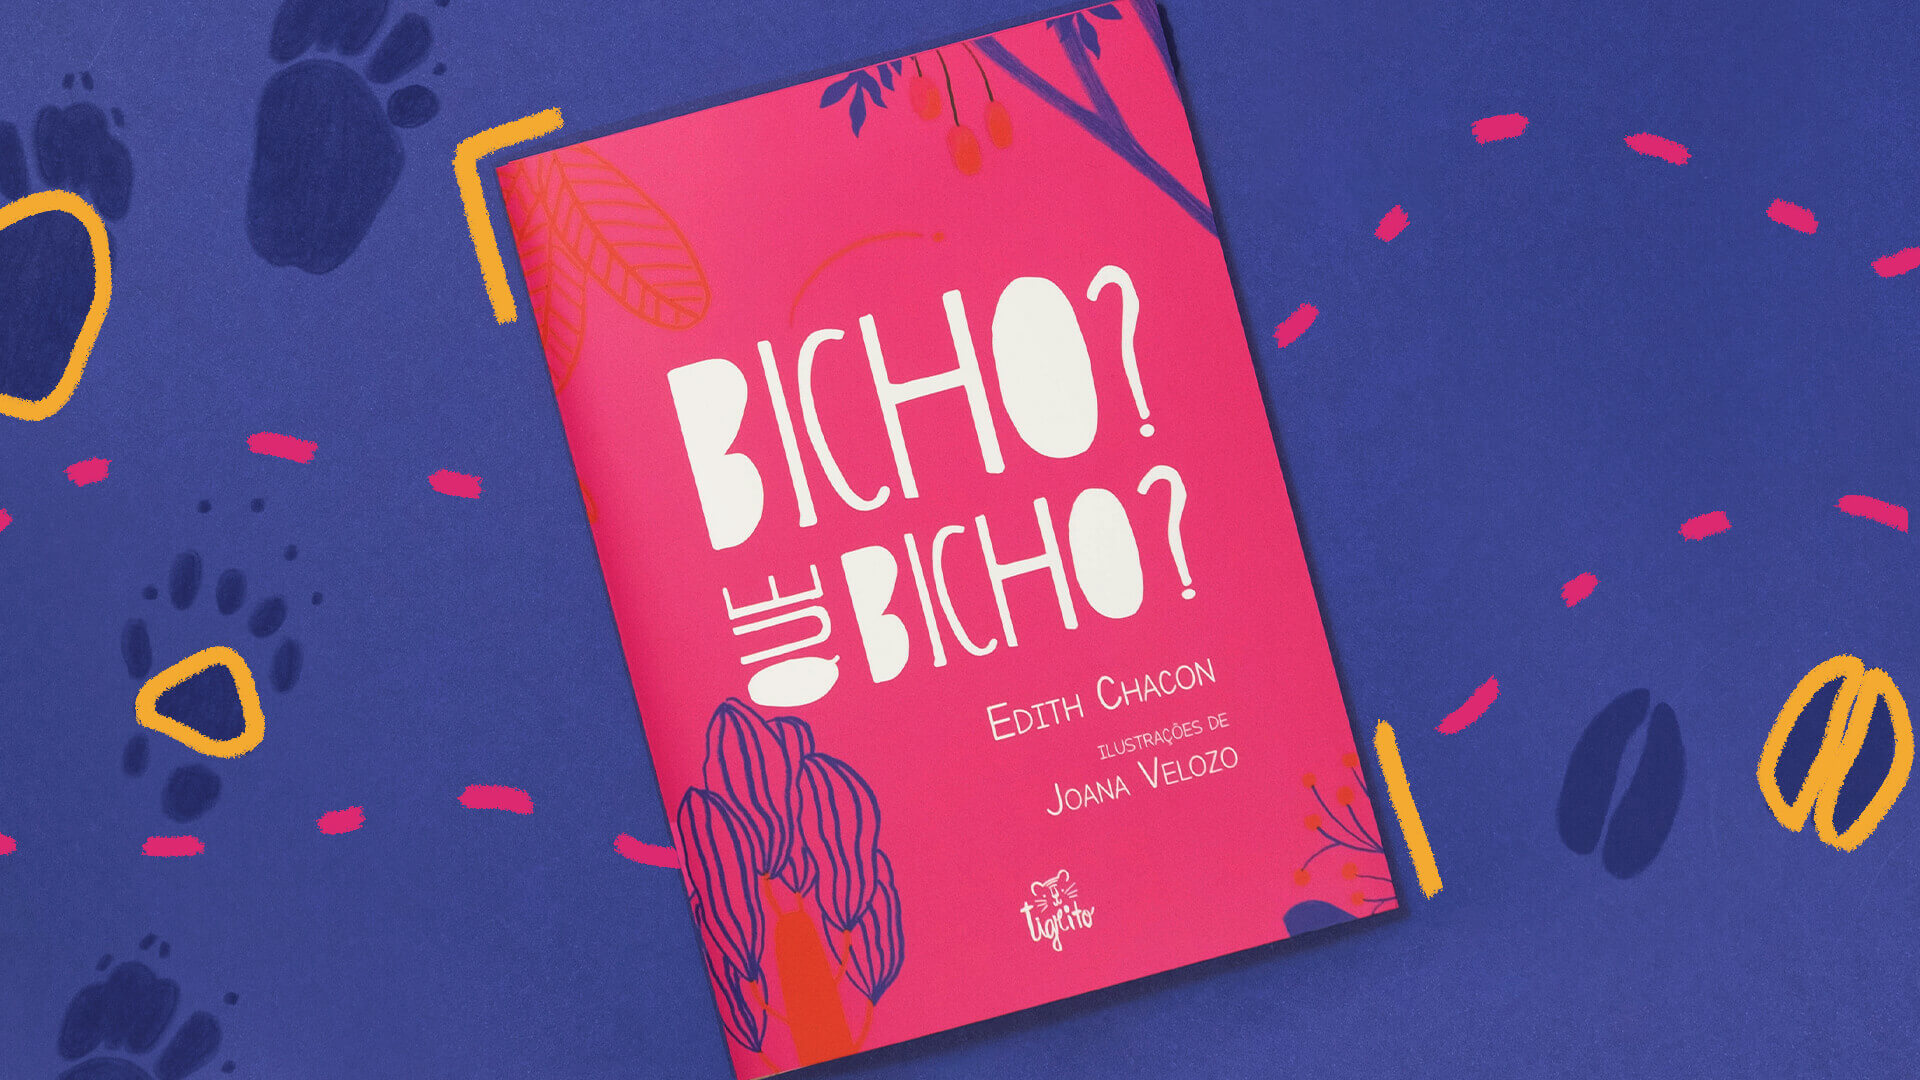 Num fundo azul escuro com rabiscos coloridos está a capa do livro, que é pink e traz o título "Bicho? Que bicho?" em letras brancas